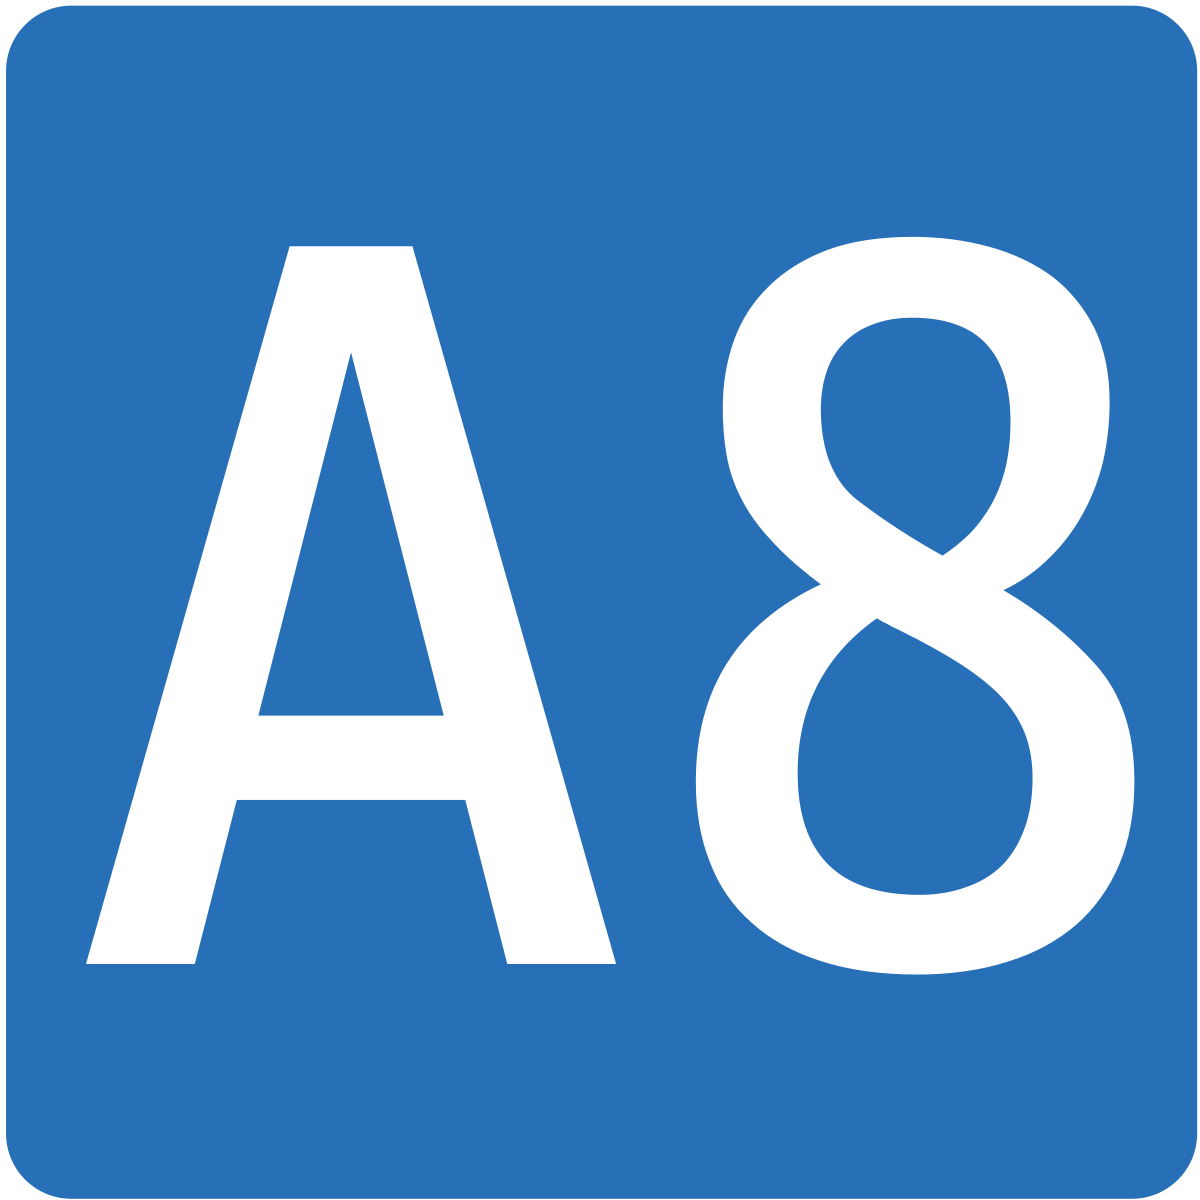 A8 Motorway